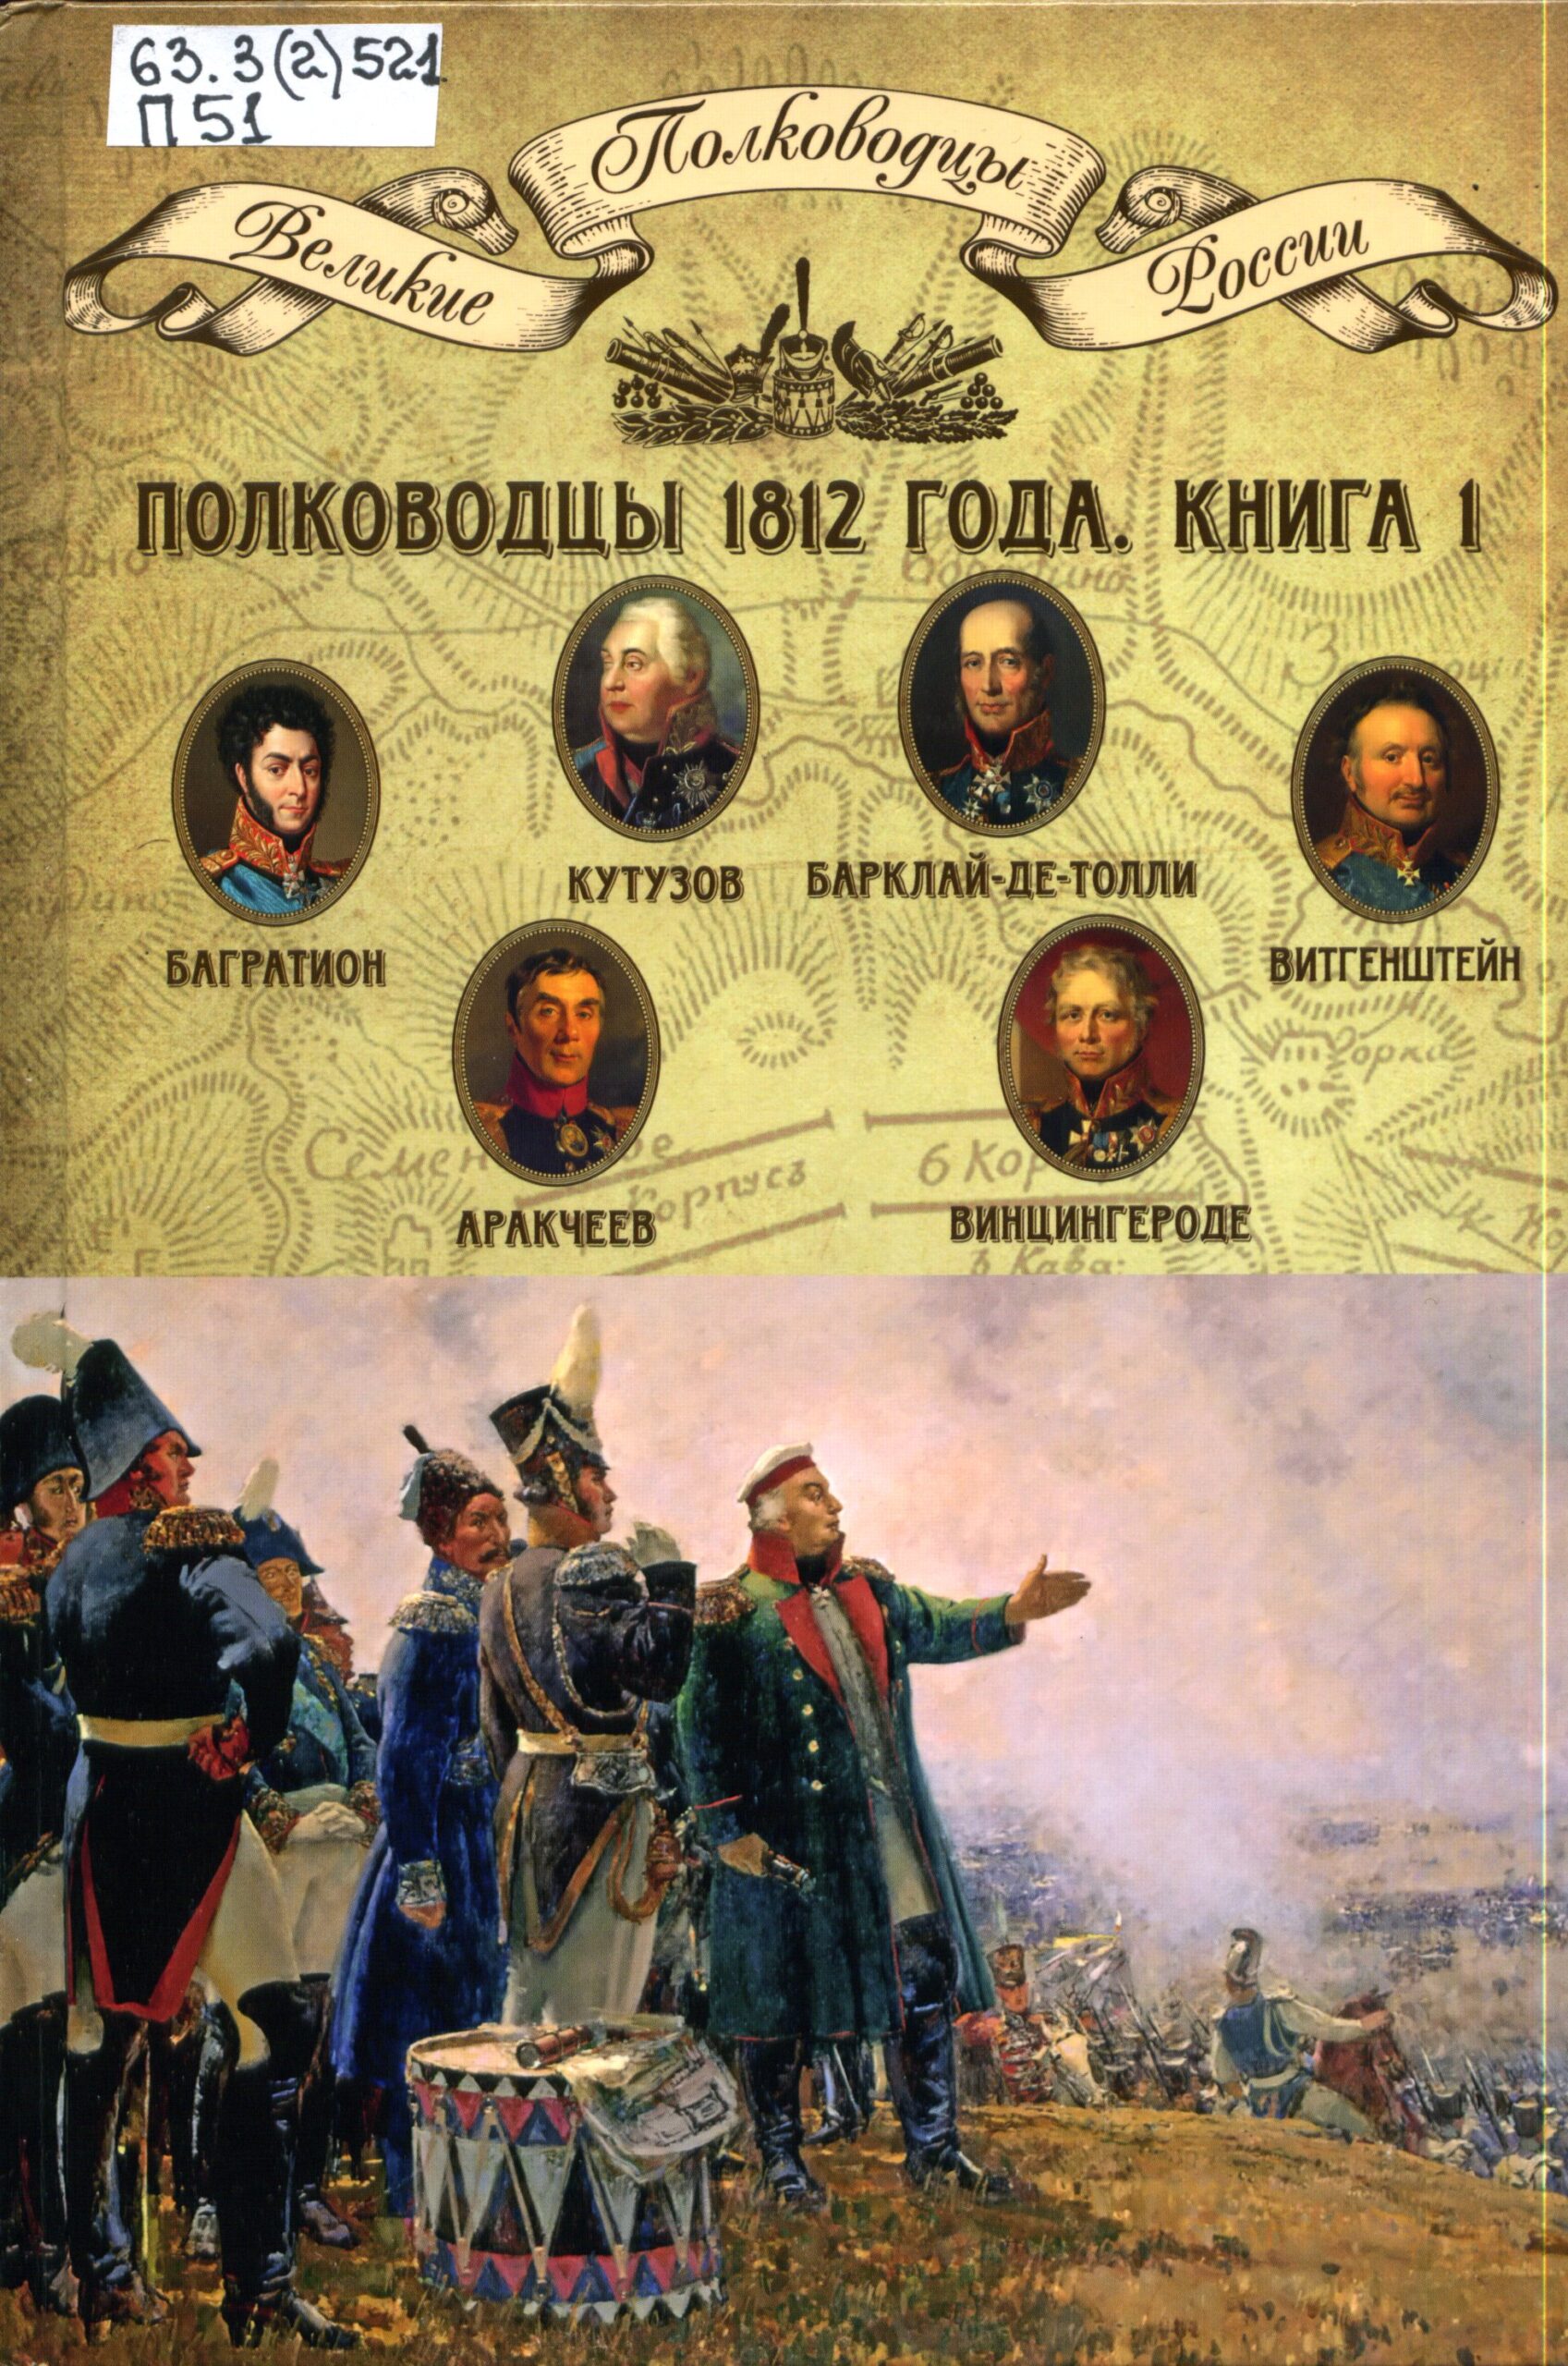 Имена великих российских военачальников 1812